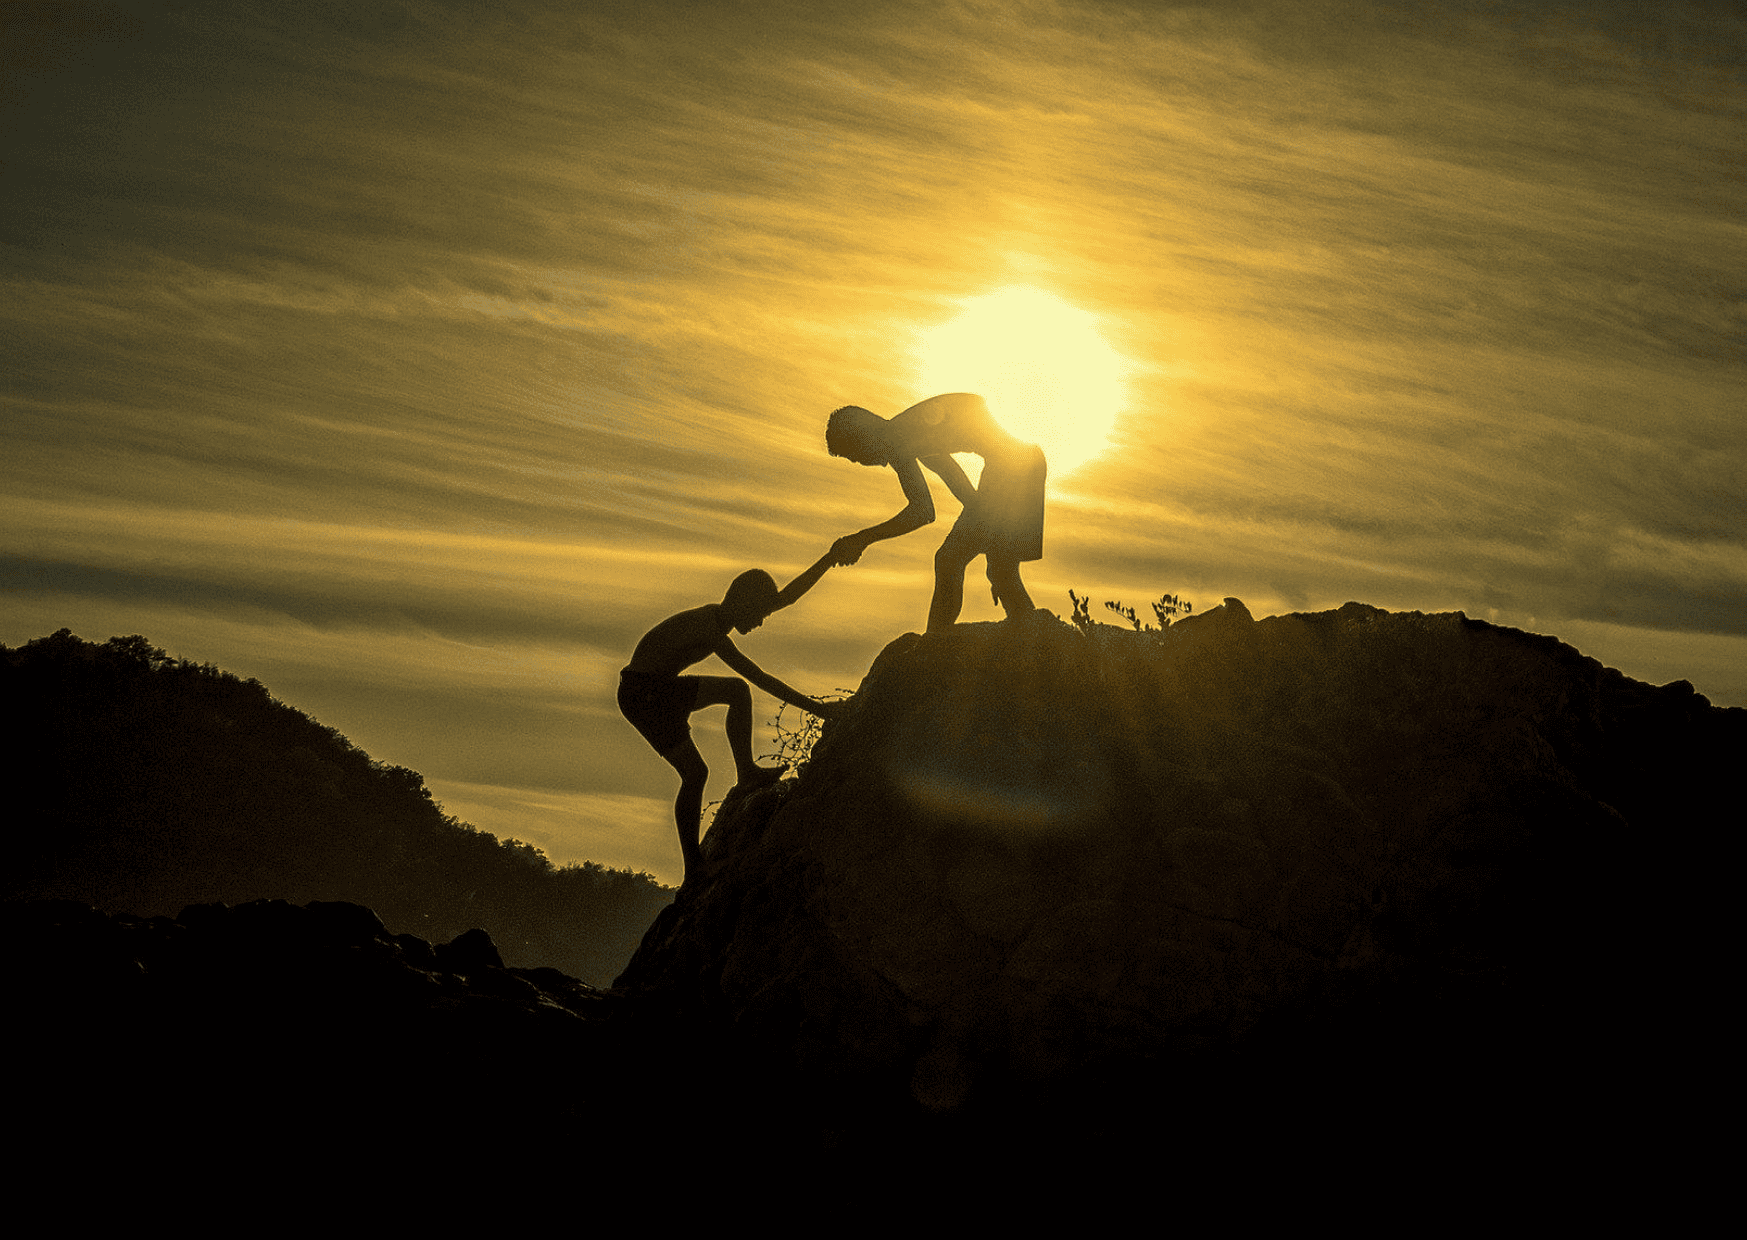 Podcast-Folge 10 – Es gibt viele Arten zu helfen - Es ist eine Berglandschaft bei Sonnenuntergang steht eine Person auf einem Berg und reicht einer anderen Person die Hand, um ihr auf den Gipfel zu helfen.